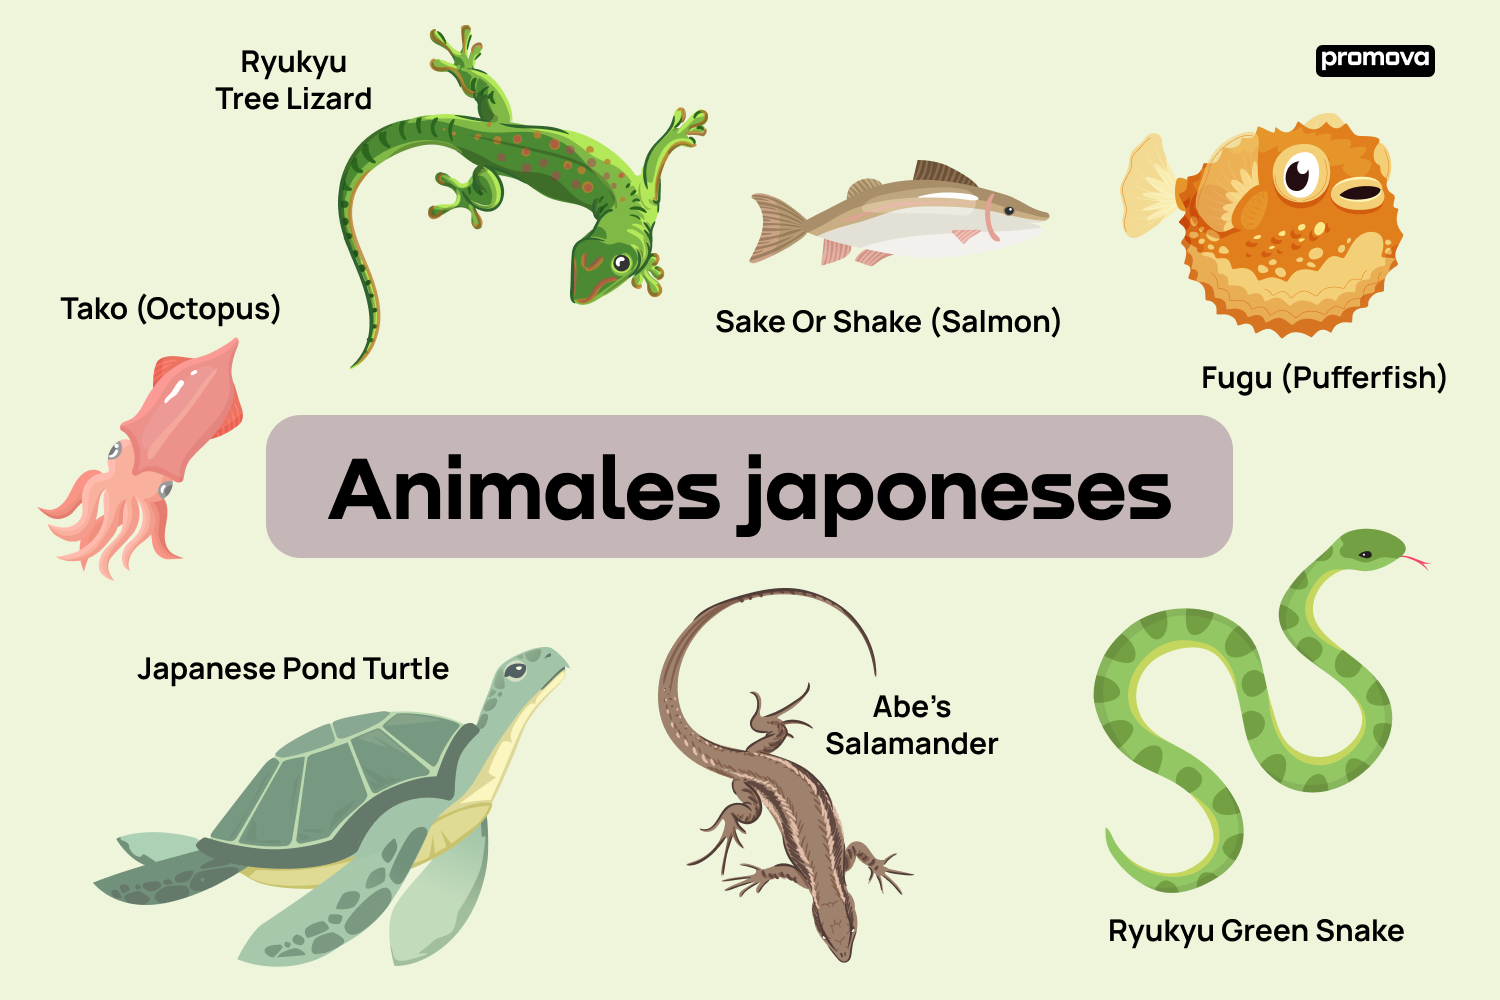 Explorando el vocabulario de animales japoneses en inglés